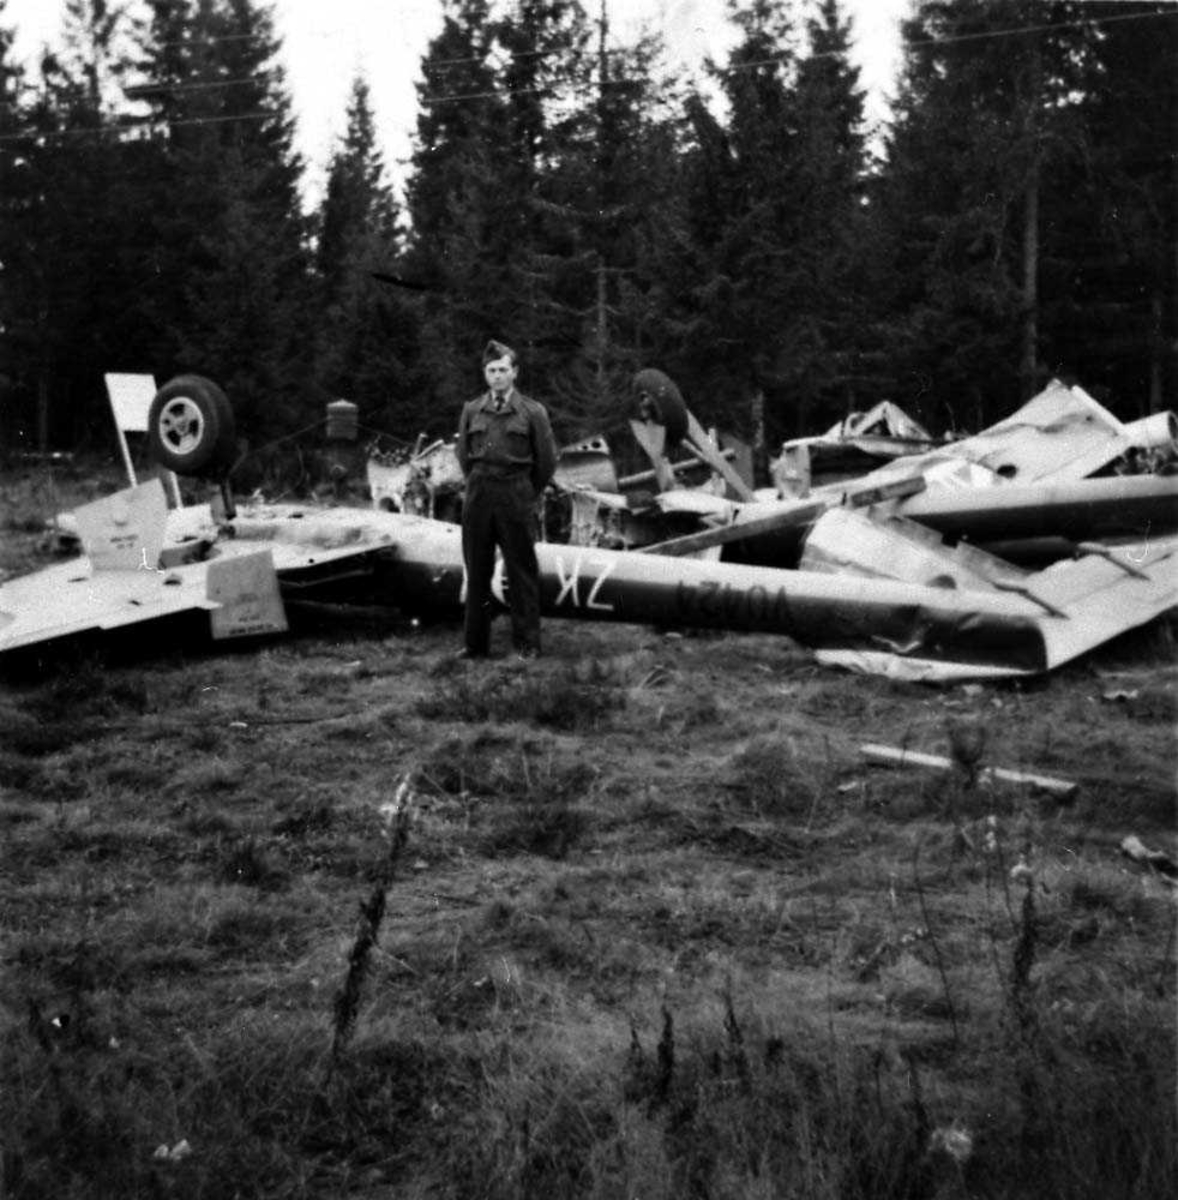 Ett fly som ligger ødelaget ute i en skog etter et totalhavari, Vampire FB Mk 52. En person står foran flyet.